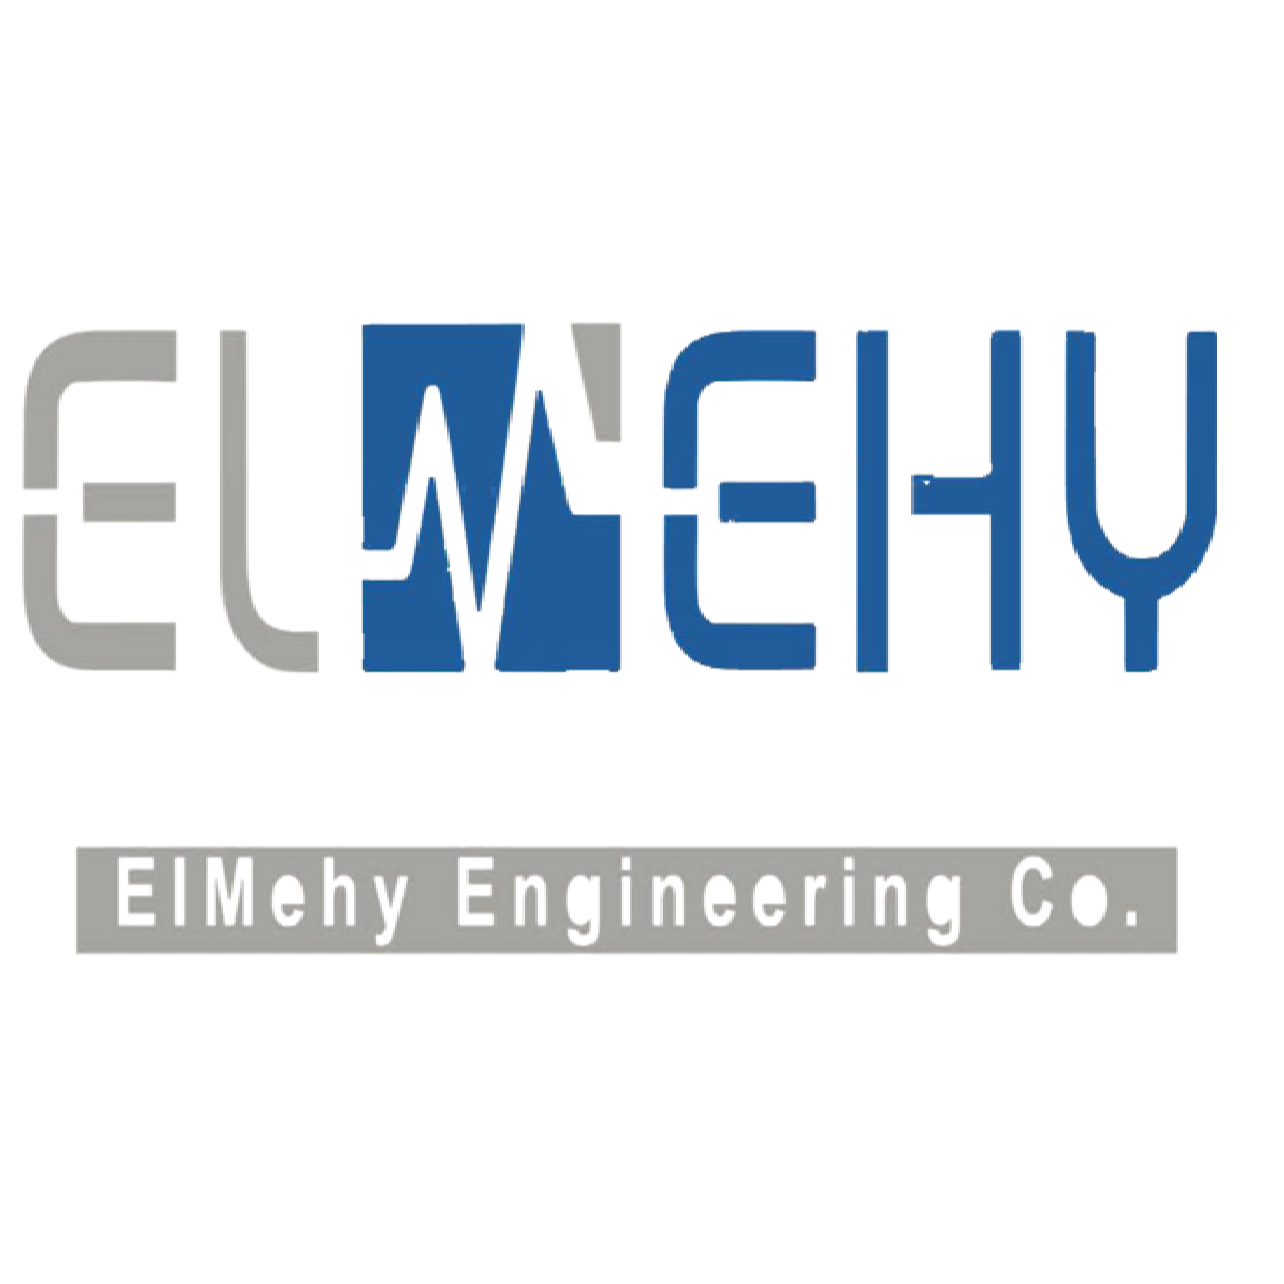 ElMehy Engineering